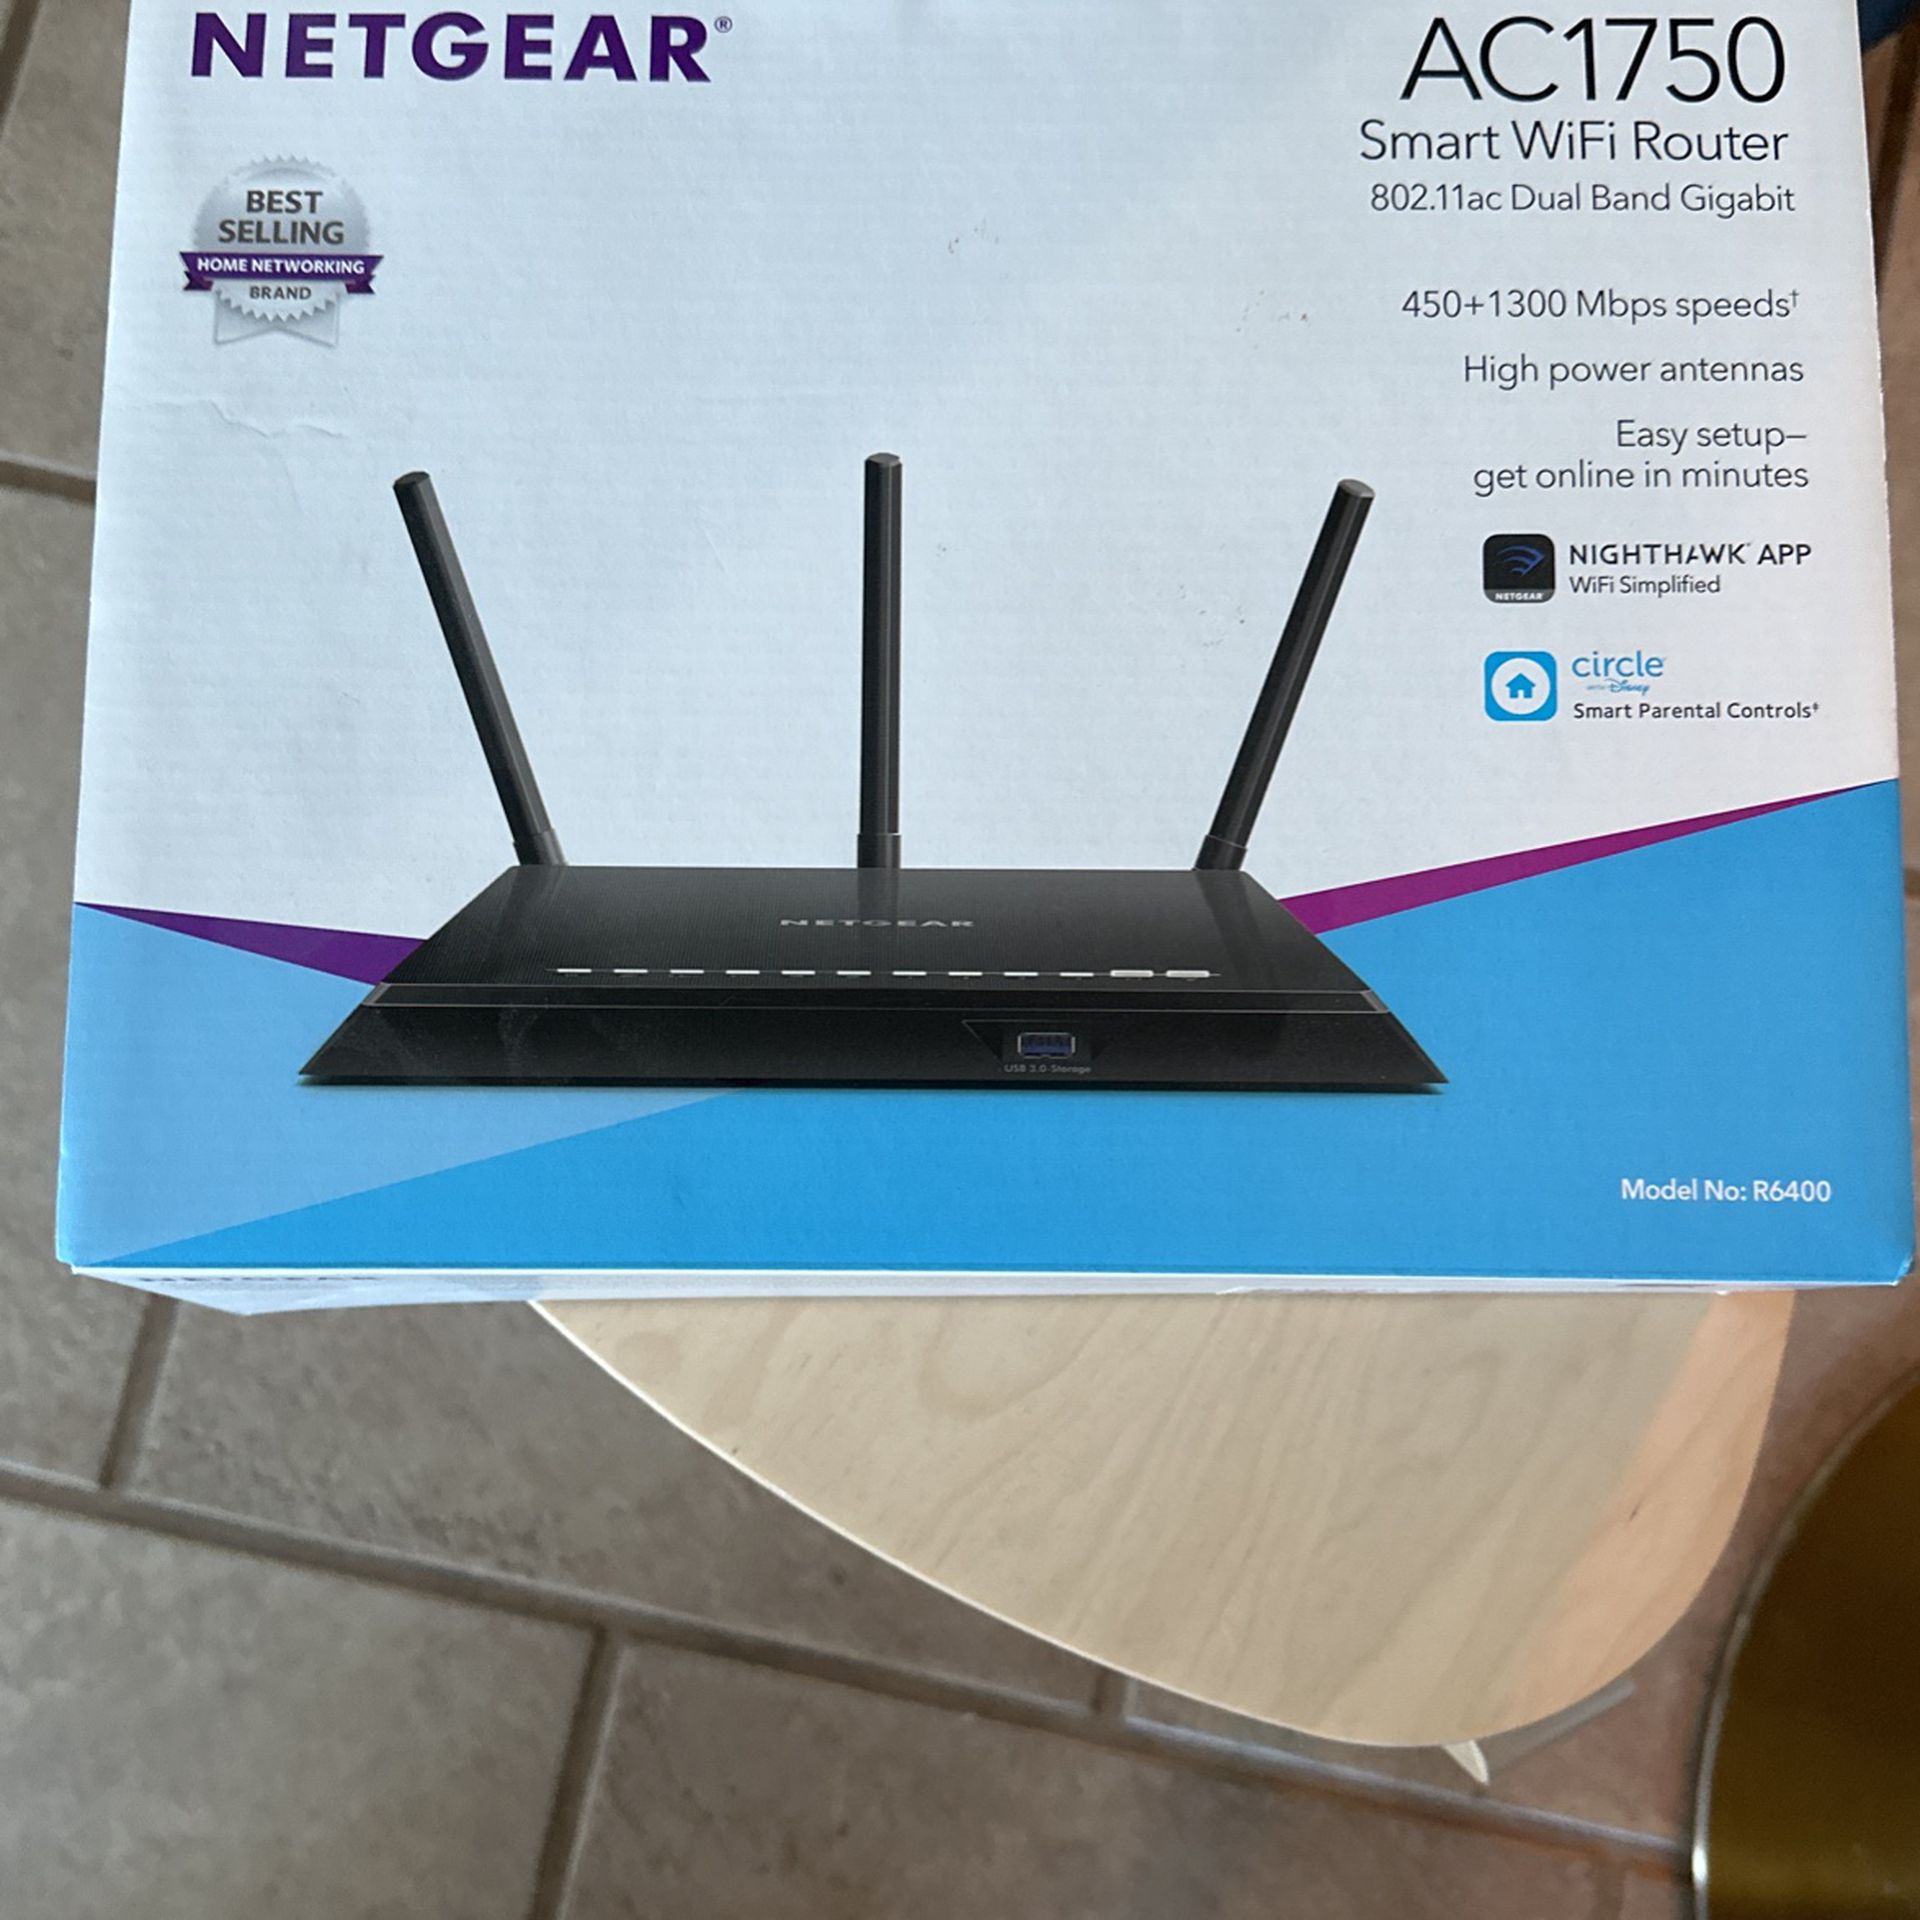 NETGEAR AC1750 Smart WiFi Router - Like New